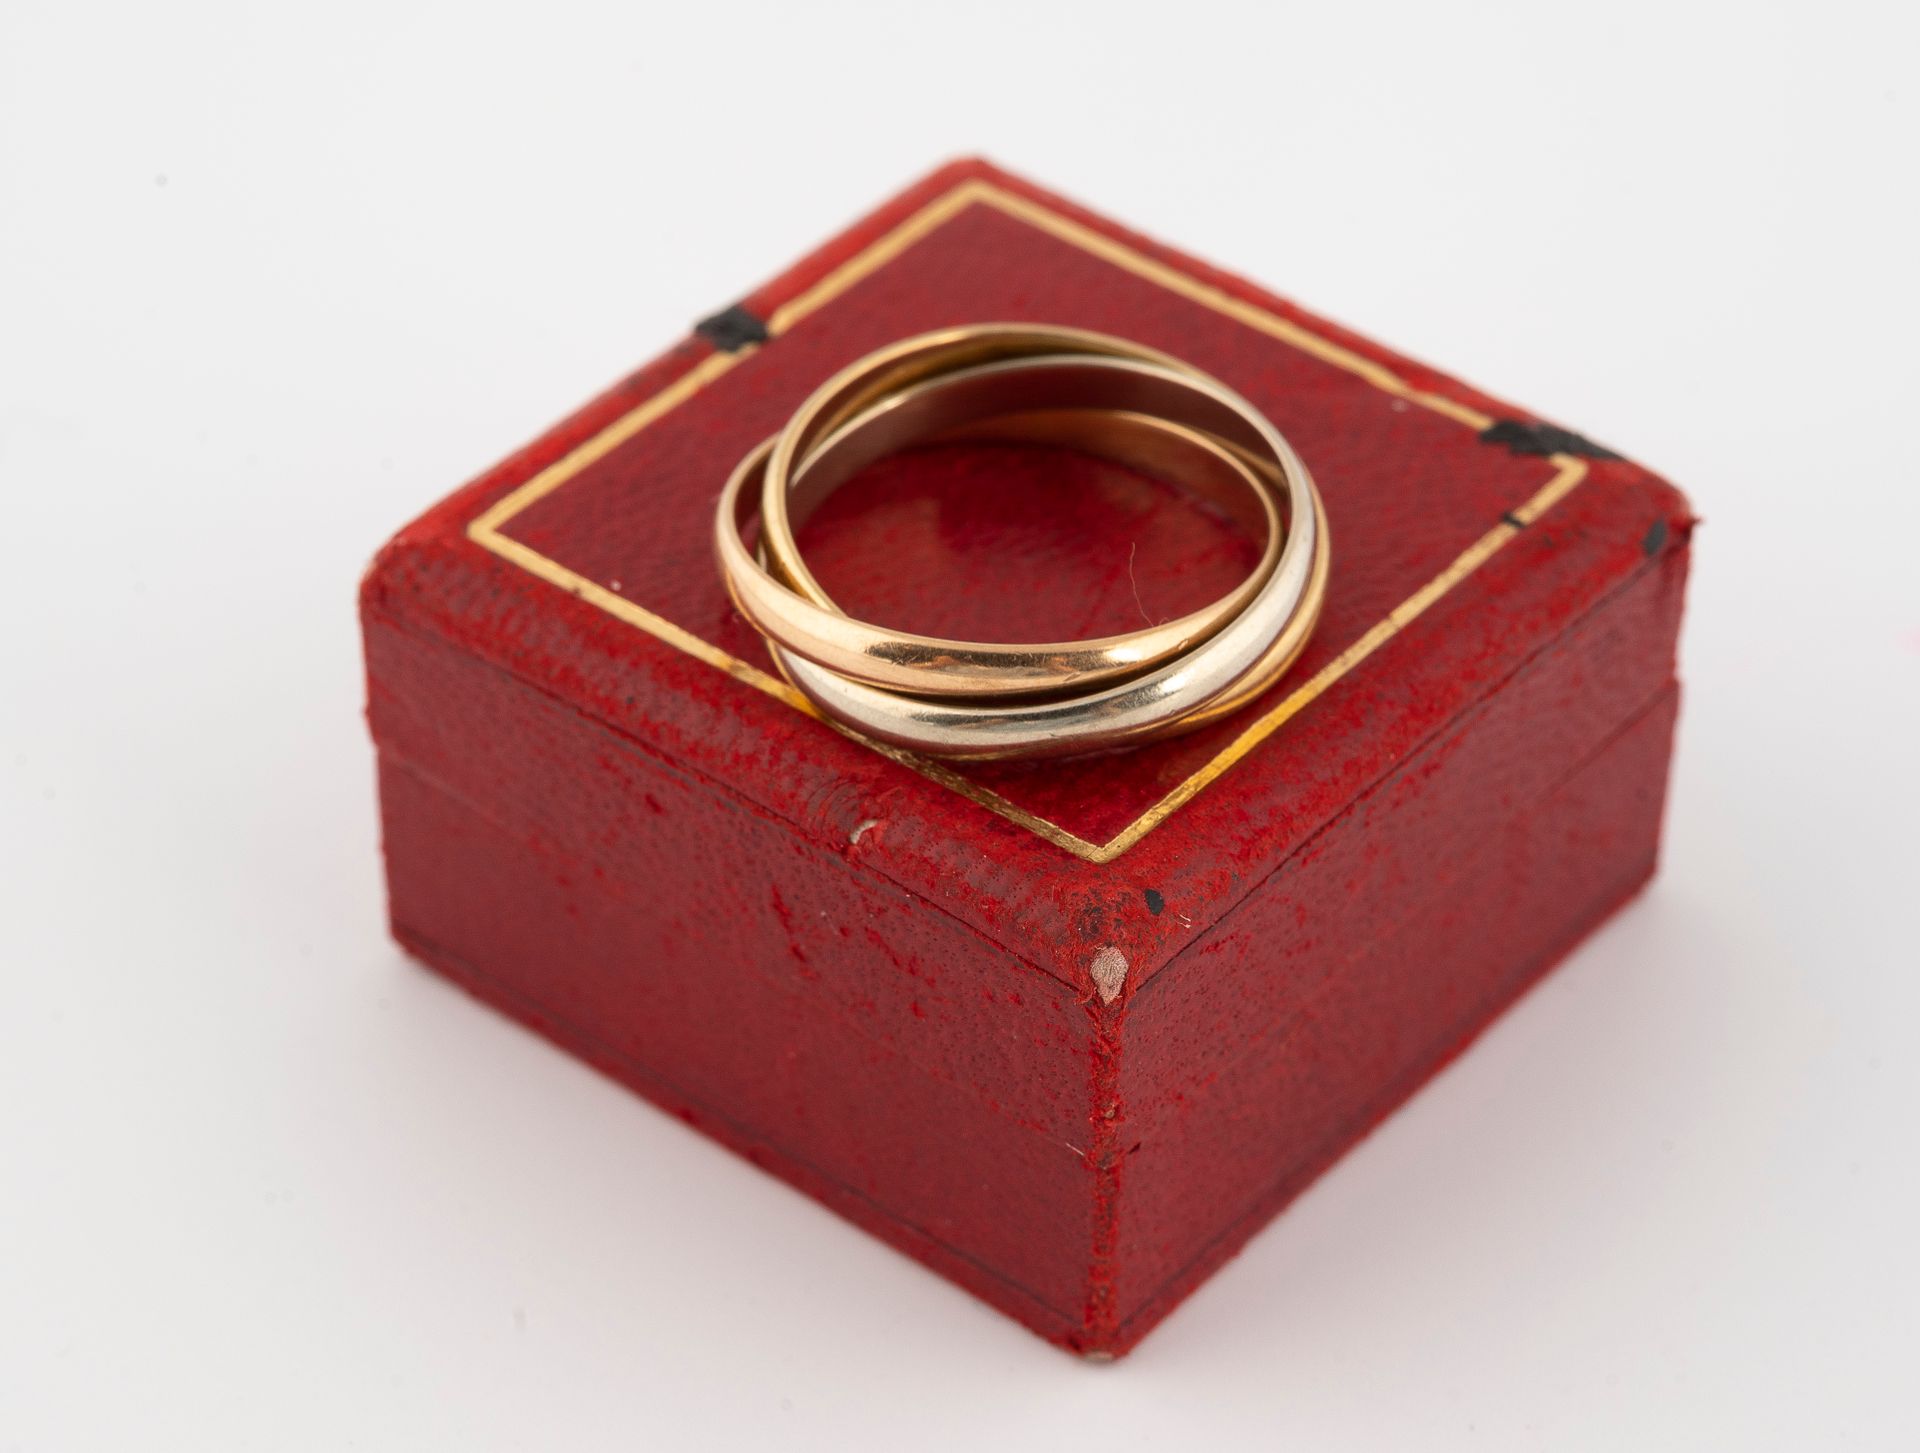 Null 巴黎卡地亚公司。
三位一体结婚戒指，三金750°/°。
签在一个箱子里。
TDD 58
重量：5.12克。